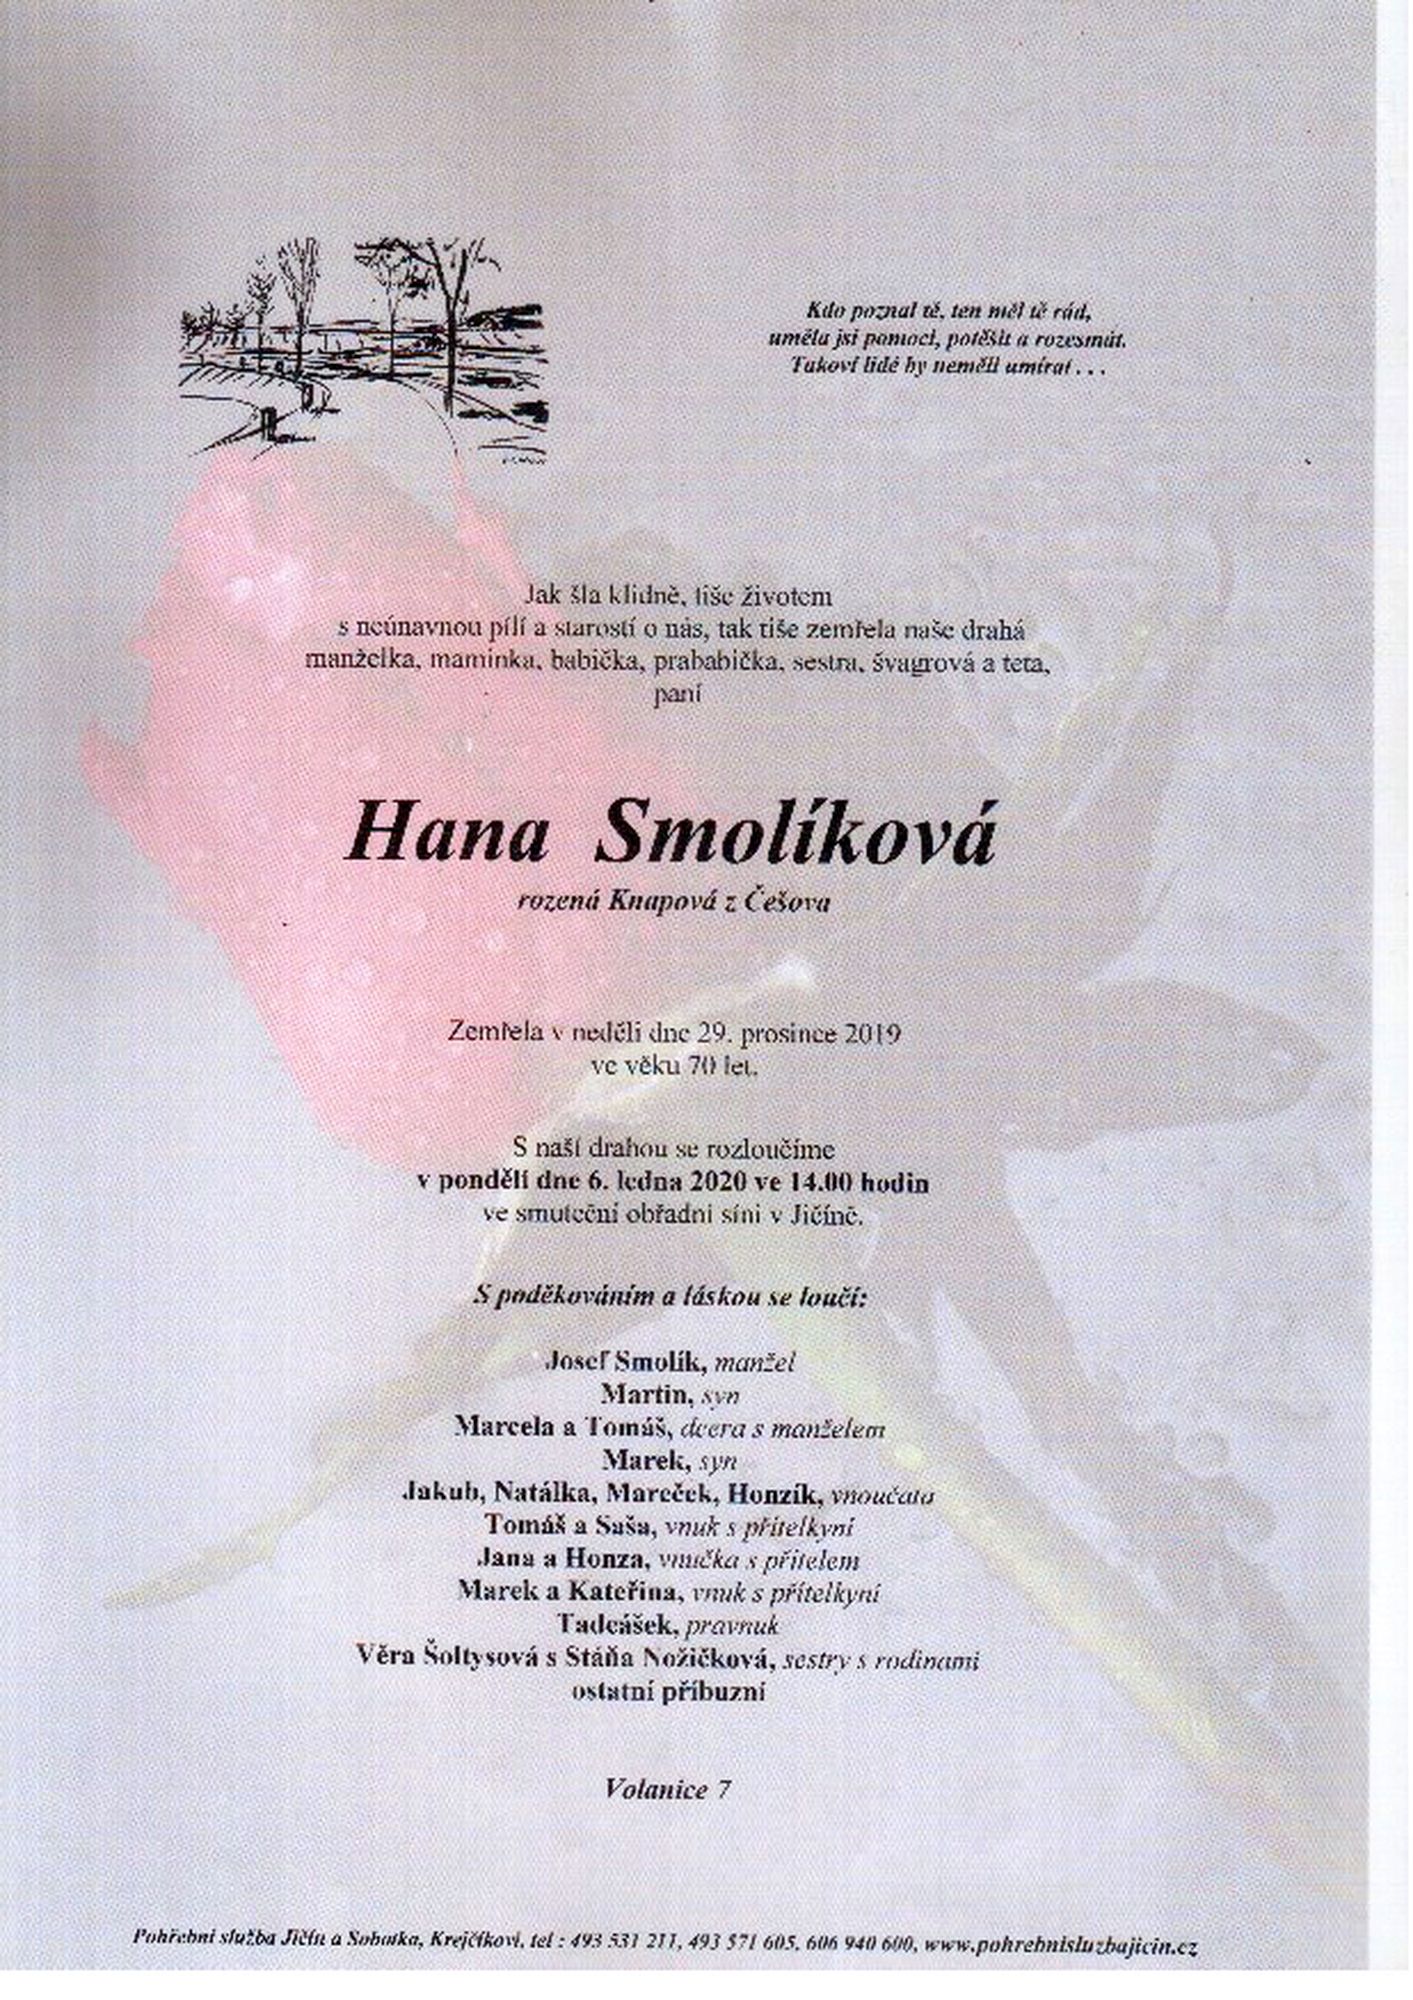 Hana Smolíková